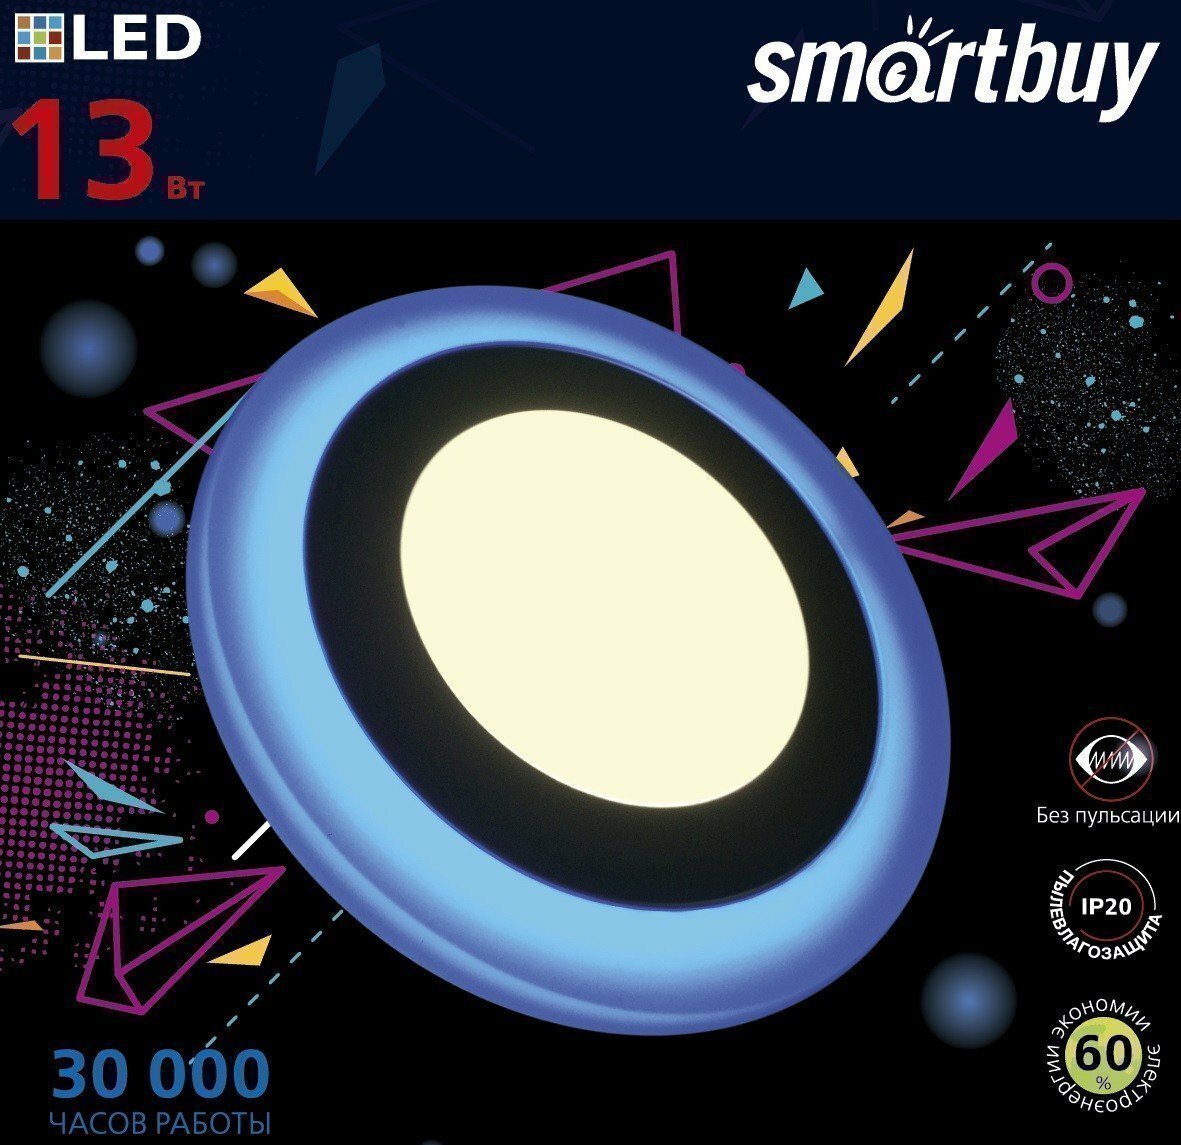 светильник накладной smartbuy с подсветкой dlb 13w/3000k+b/ip20 sbl1-dlb-13-3k-b - фото №4